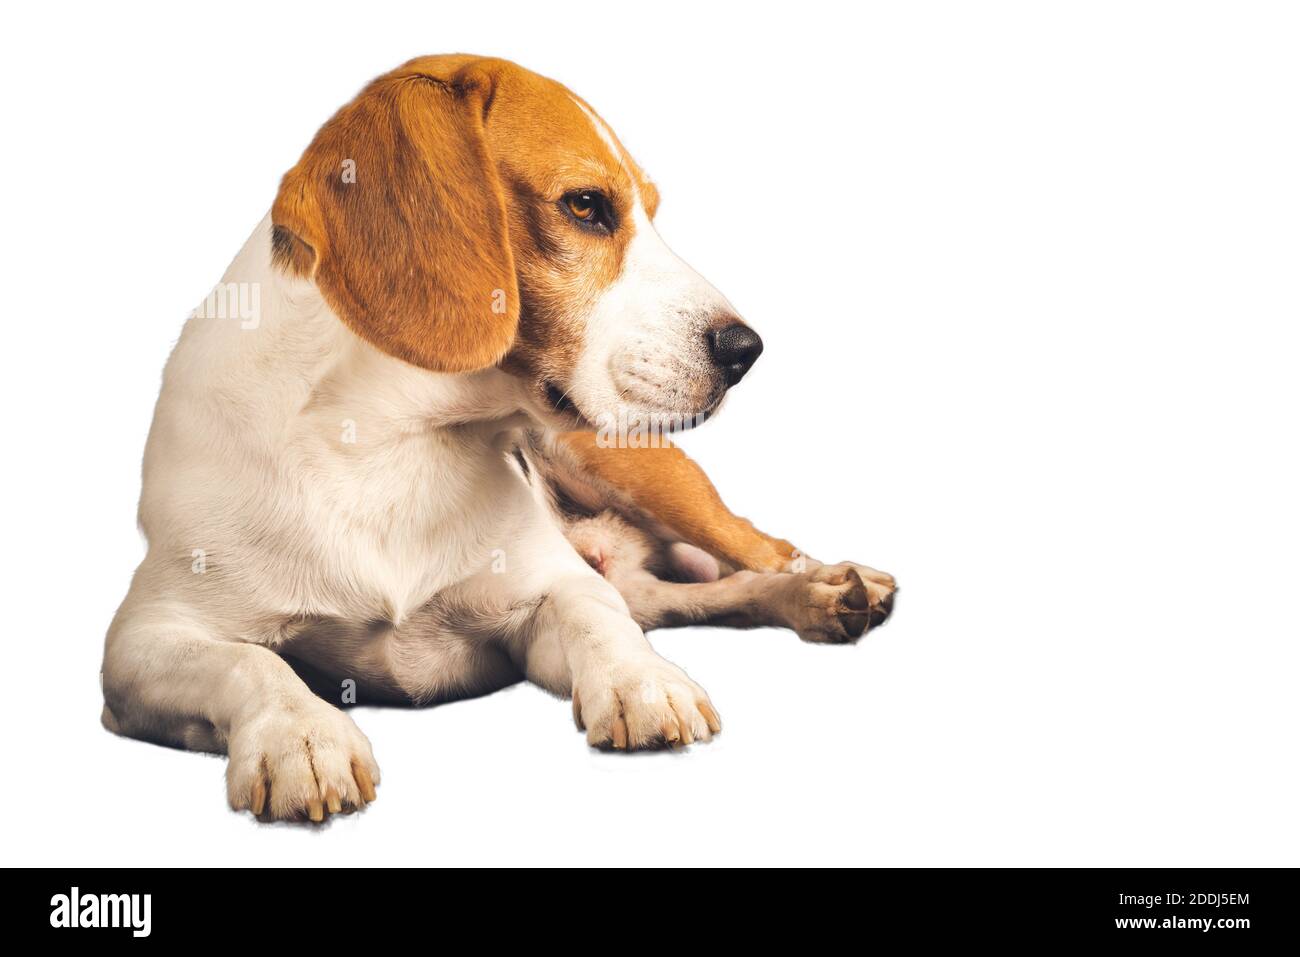 Corps entier de chien beagle isolé sur fond blanc. Le chien mâle est allongé sur la gauche. Banque D'Images